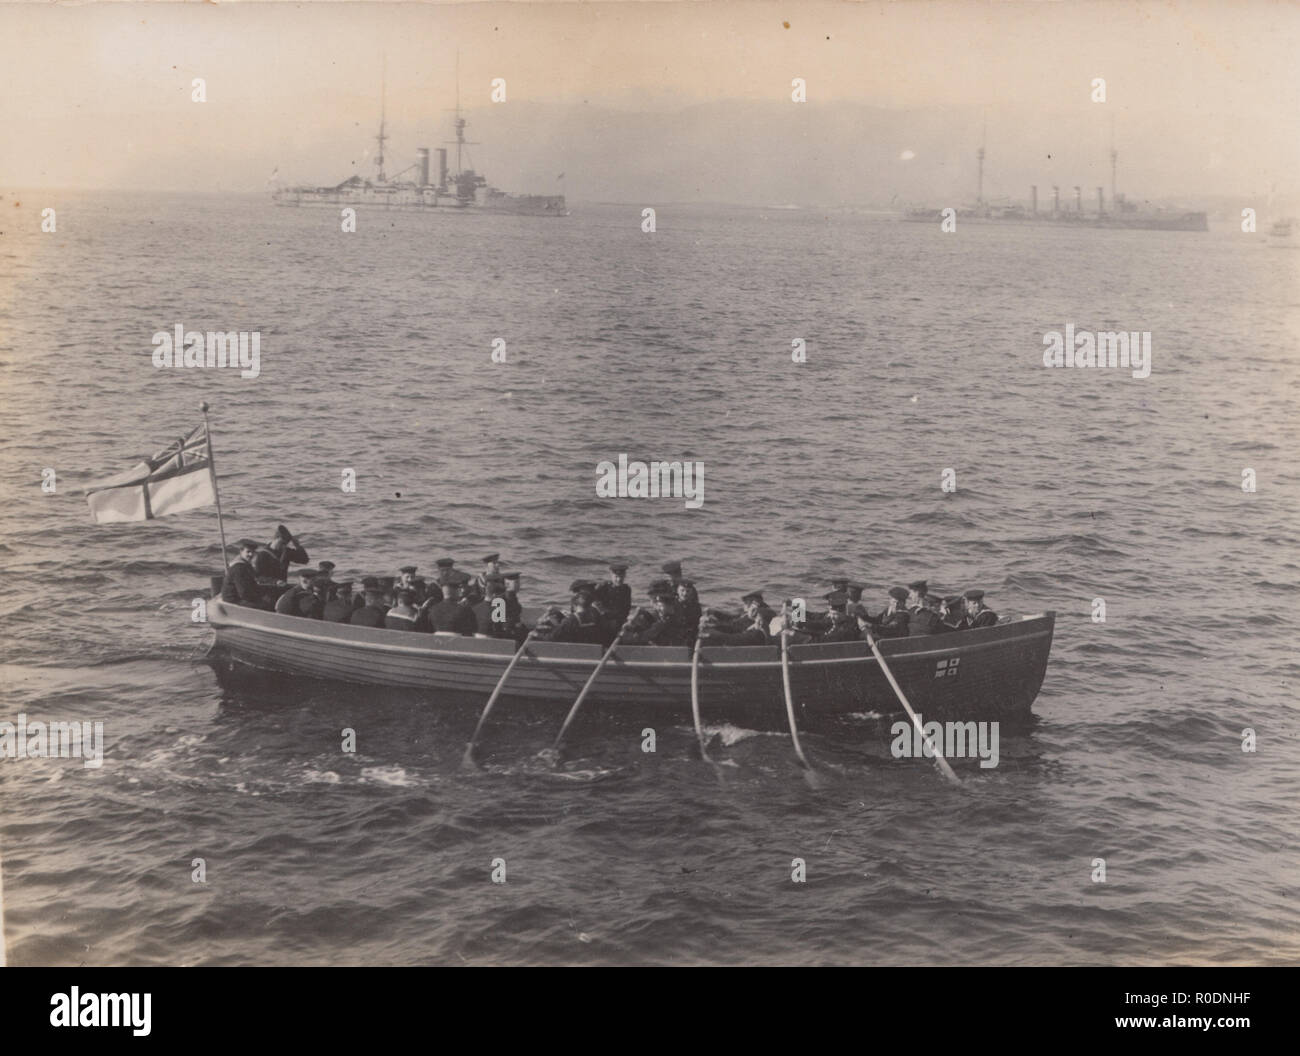 Vintage Cartolina fotografica di ?.B.S regata, Colonsay. Barca a remi di marinai con navi da guerra in background. Foto Stock